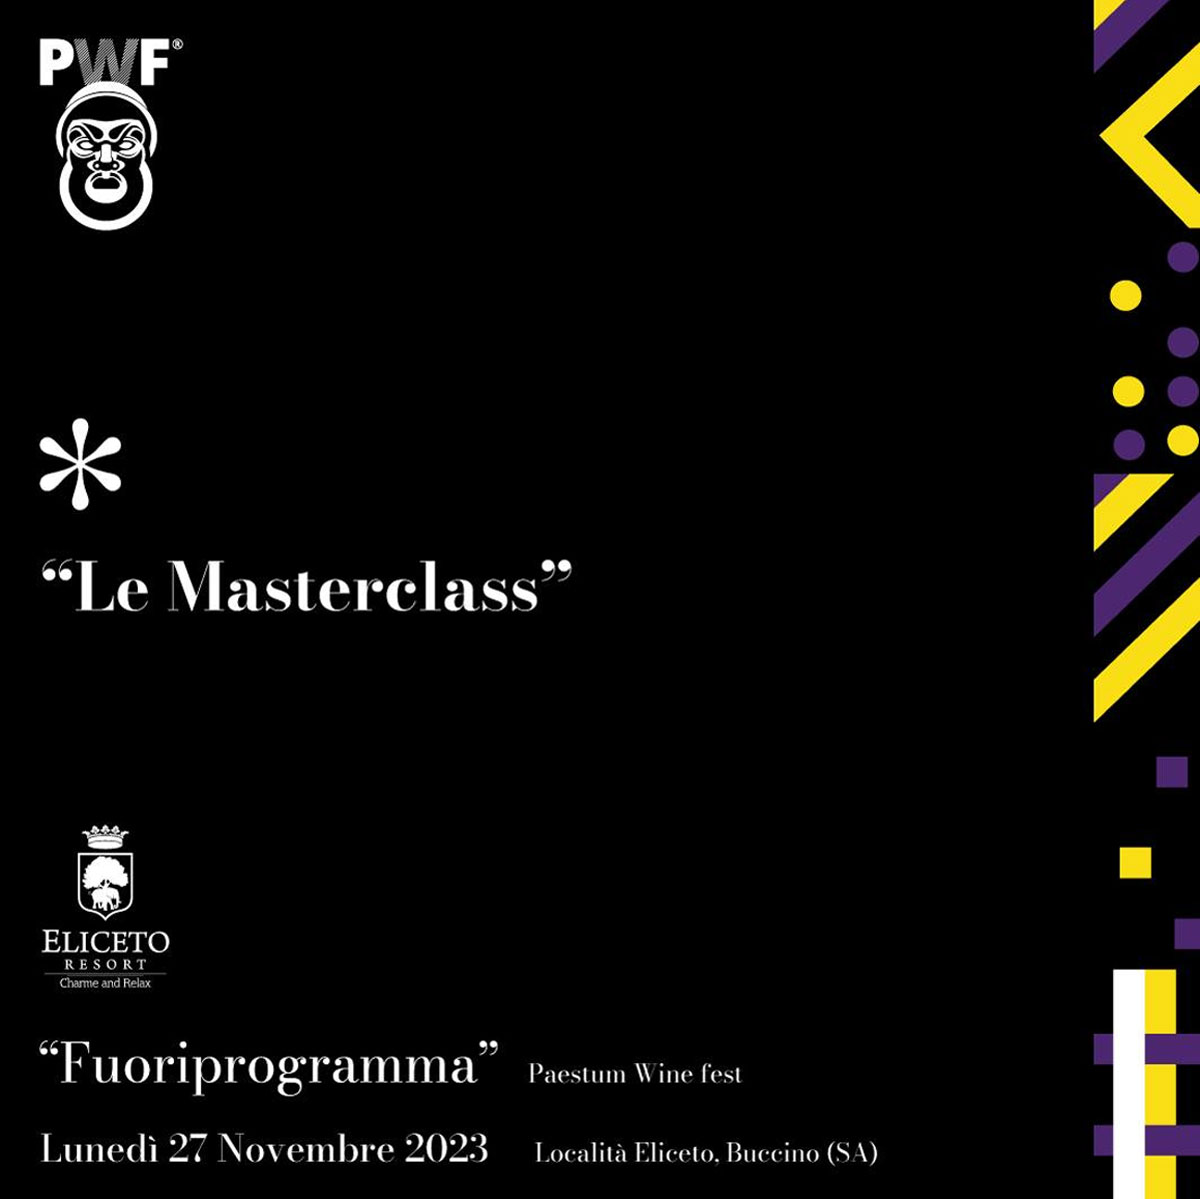 Paestum Wine Fest *Fuoriprogramma Ore 18:00 Masterclass "Viaggio tra le province campane" a cura di Luciano Pignataro e Alessandro Rossi 